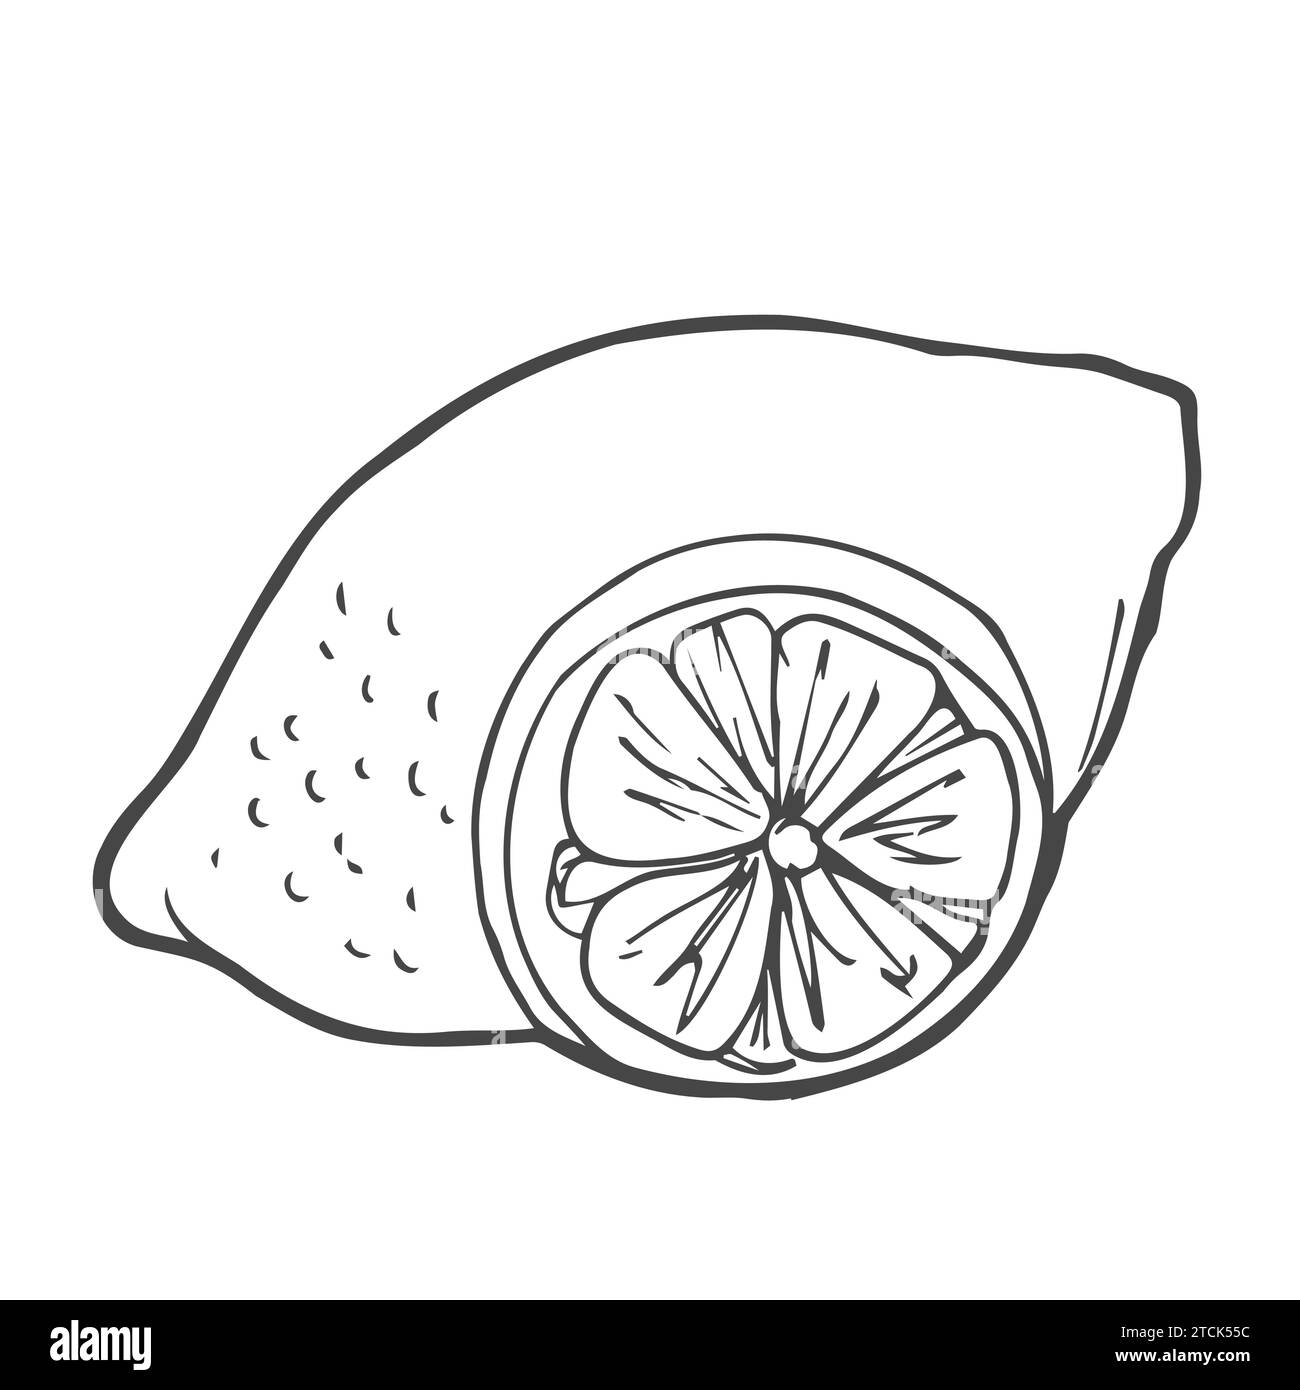 Handgezeichnete Kritzelei-Cartoon-Stil Vektor-Illustration. Sammlung Set von Zitrusfrüchten aus Limette Orange Stock Vektor